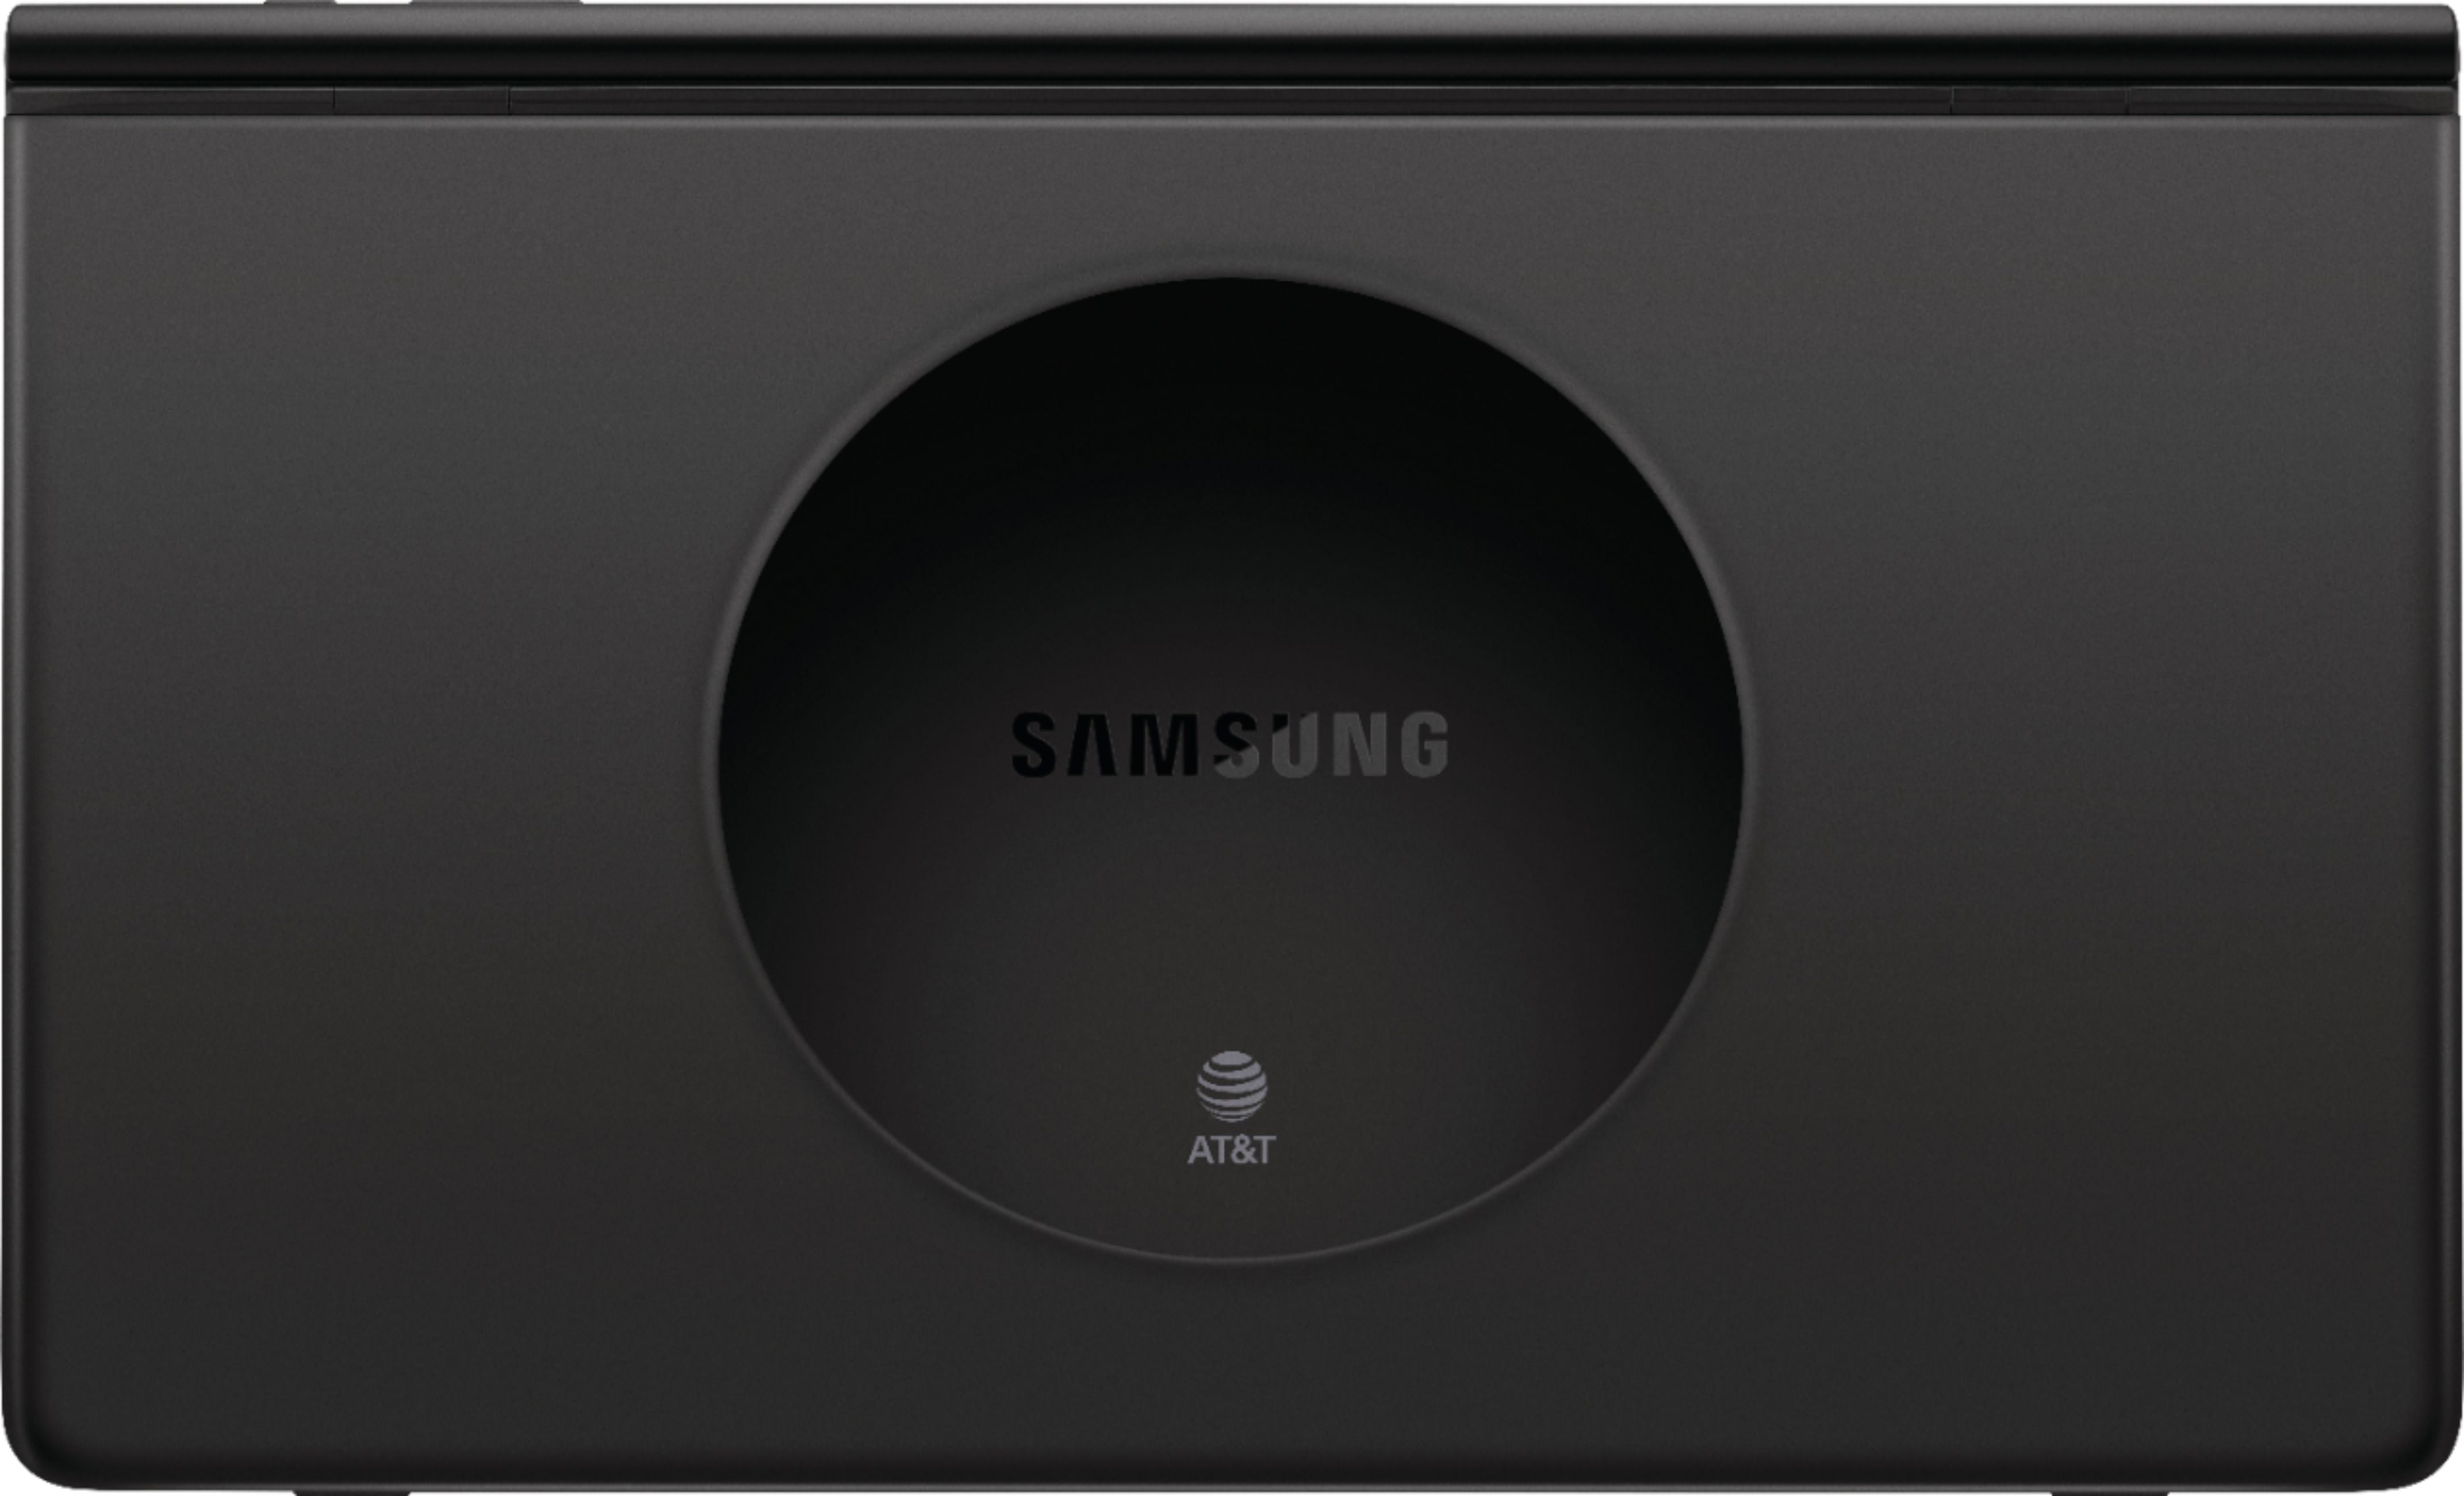 Samsung SM-T927AZKAATT-RB 17.3" Galaxy View 2 64GB AT&T 4GLTE Grey - Refurbished